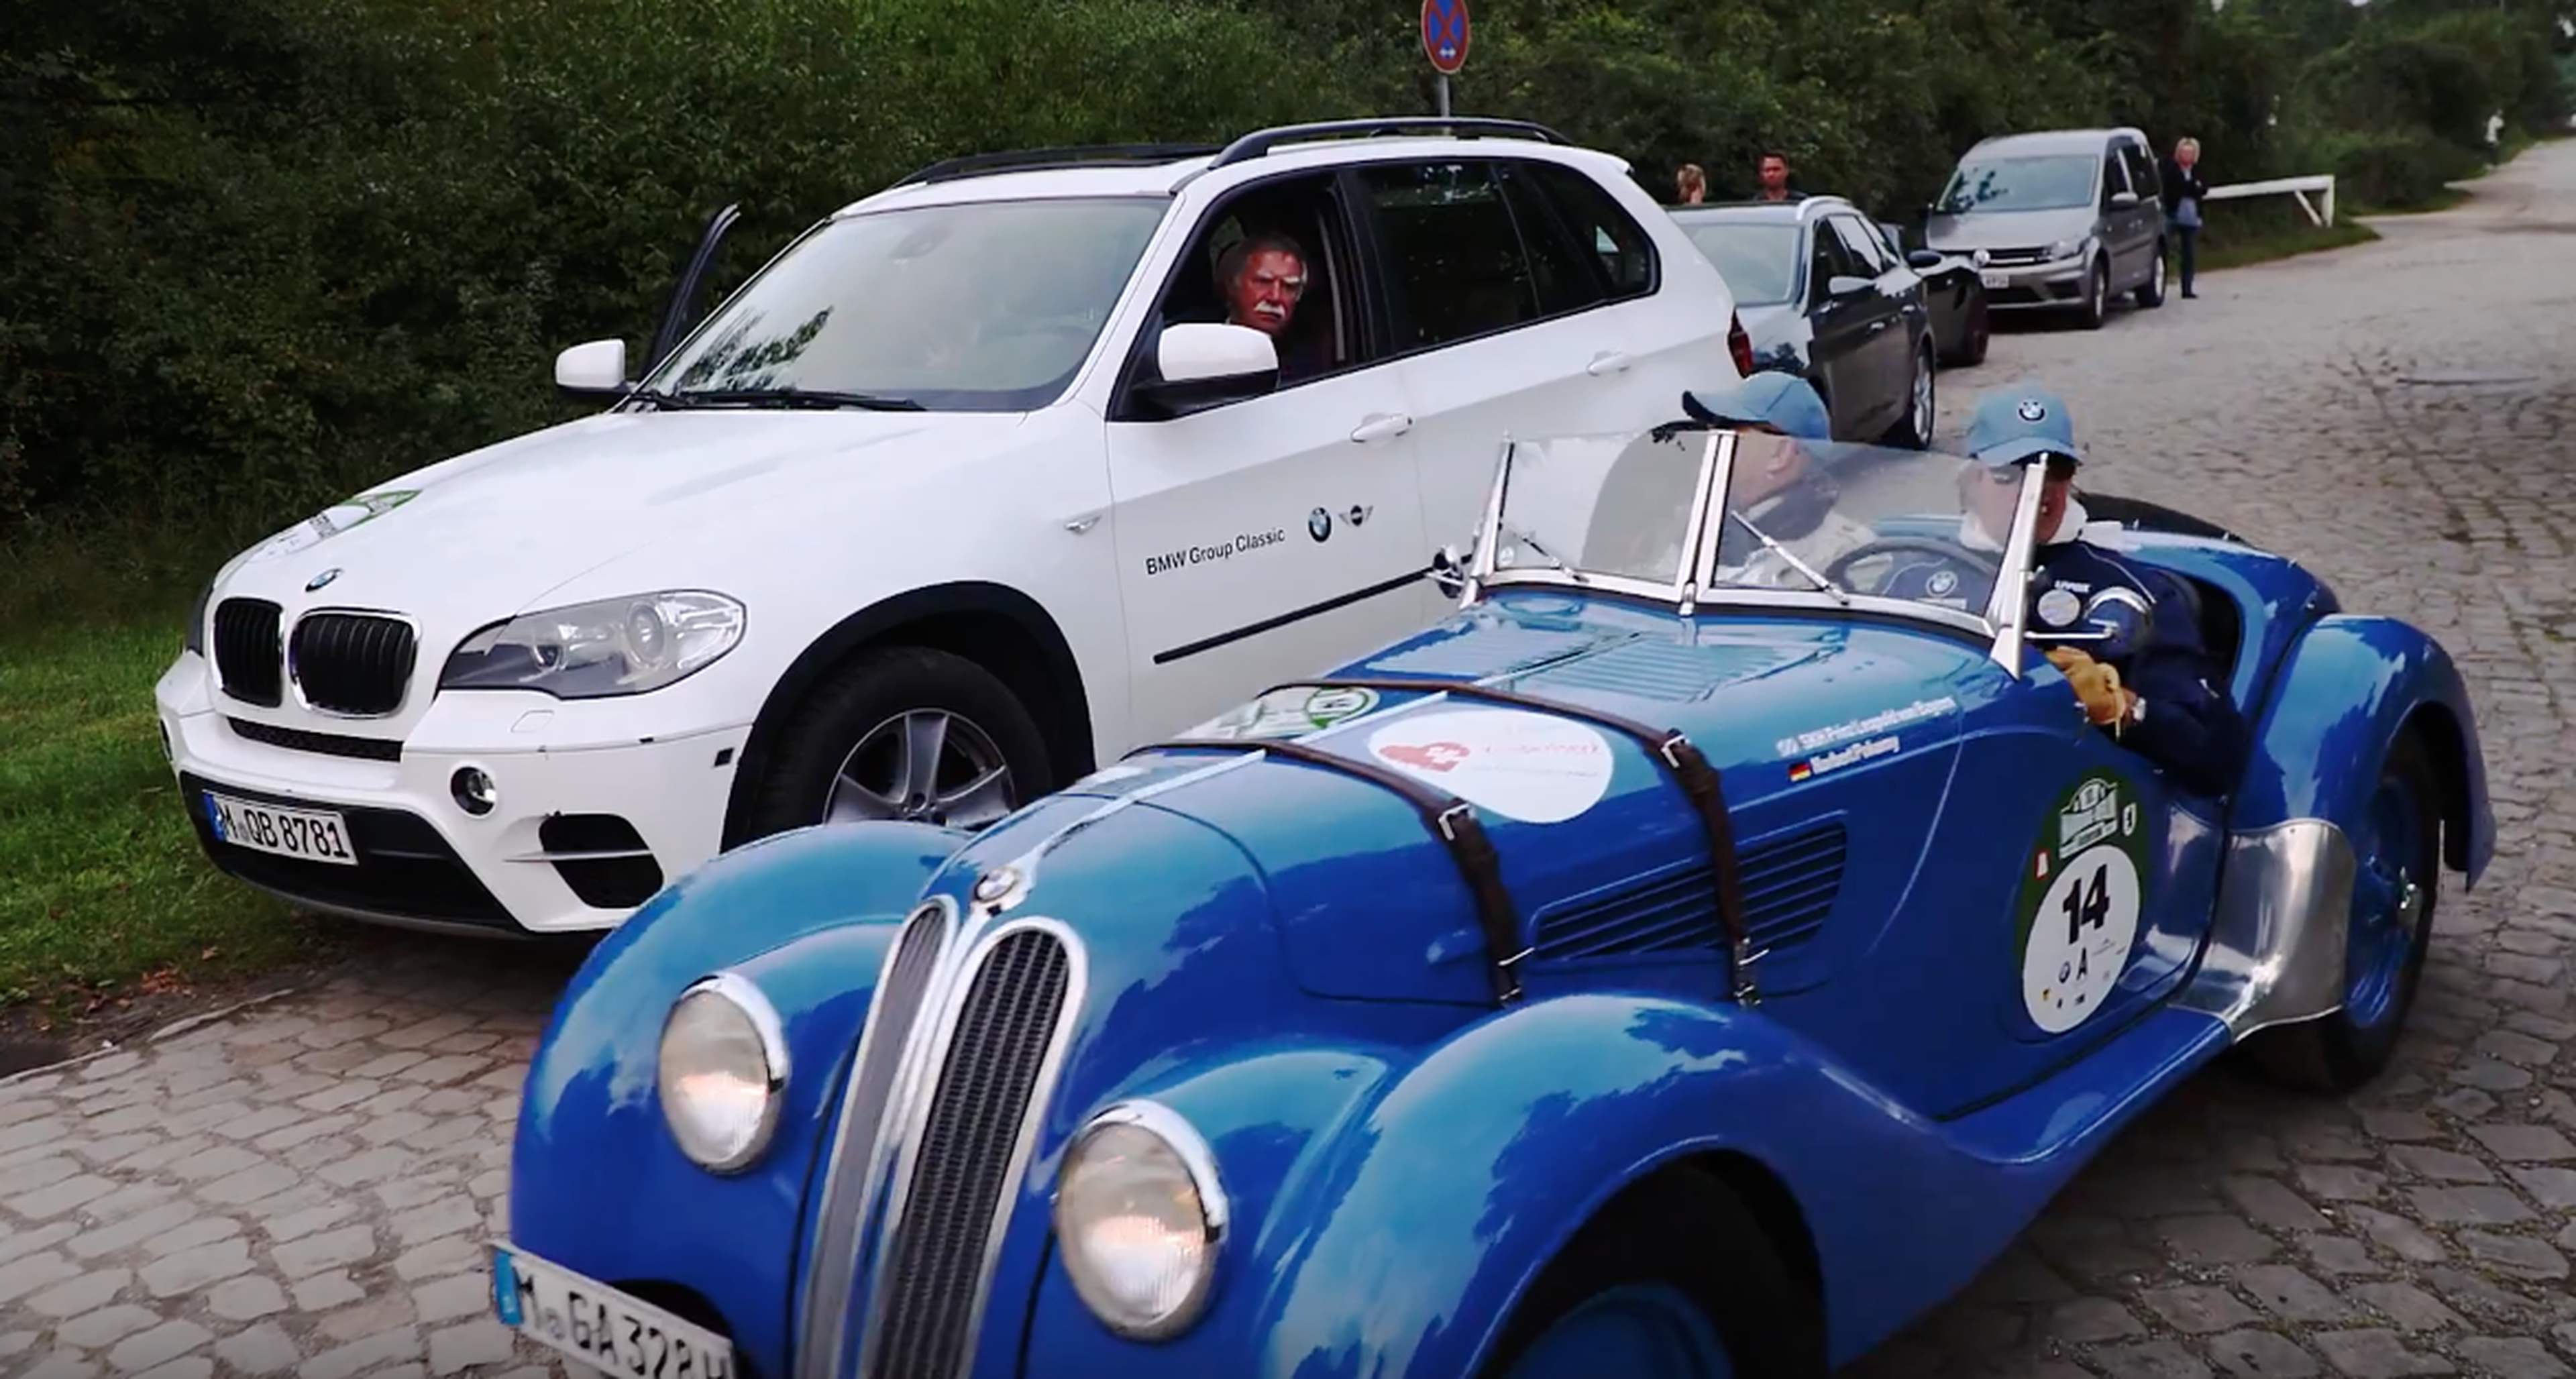 VÍDEO: ¿Echas en falta algún clásico de BMW? Son alucinantes